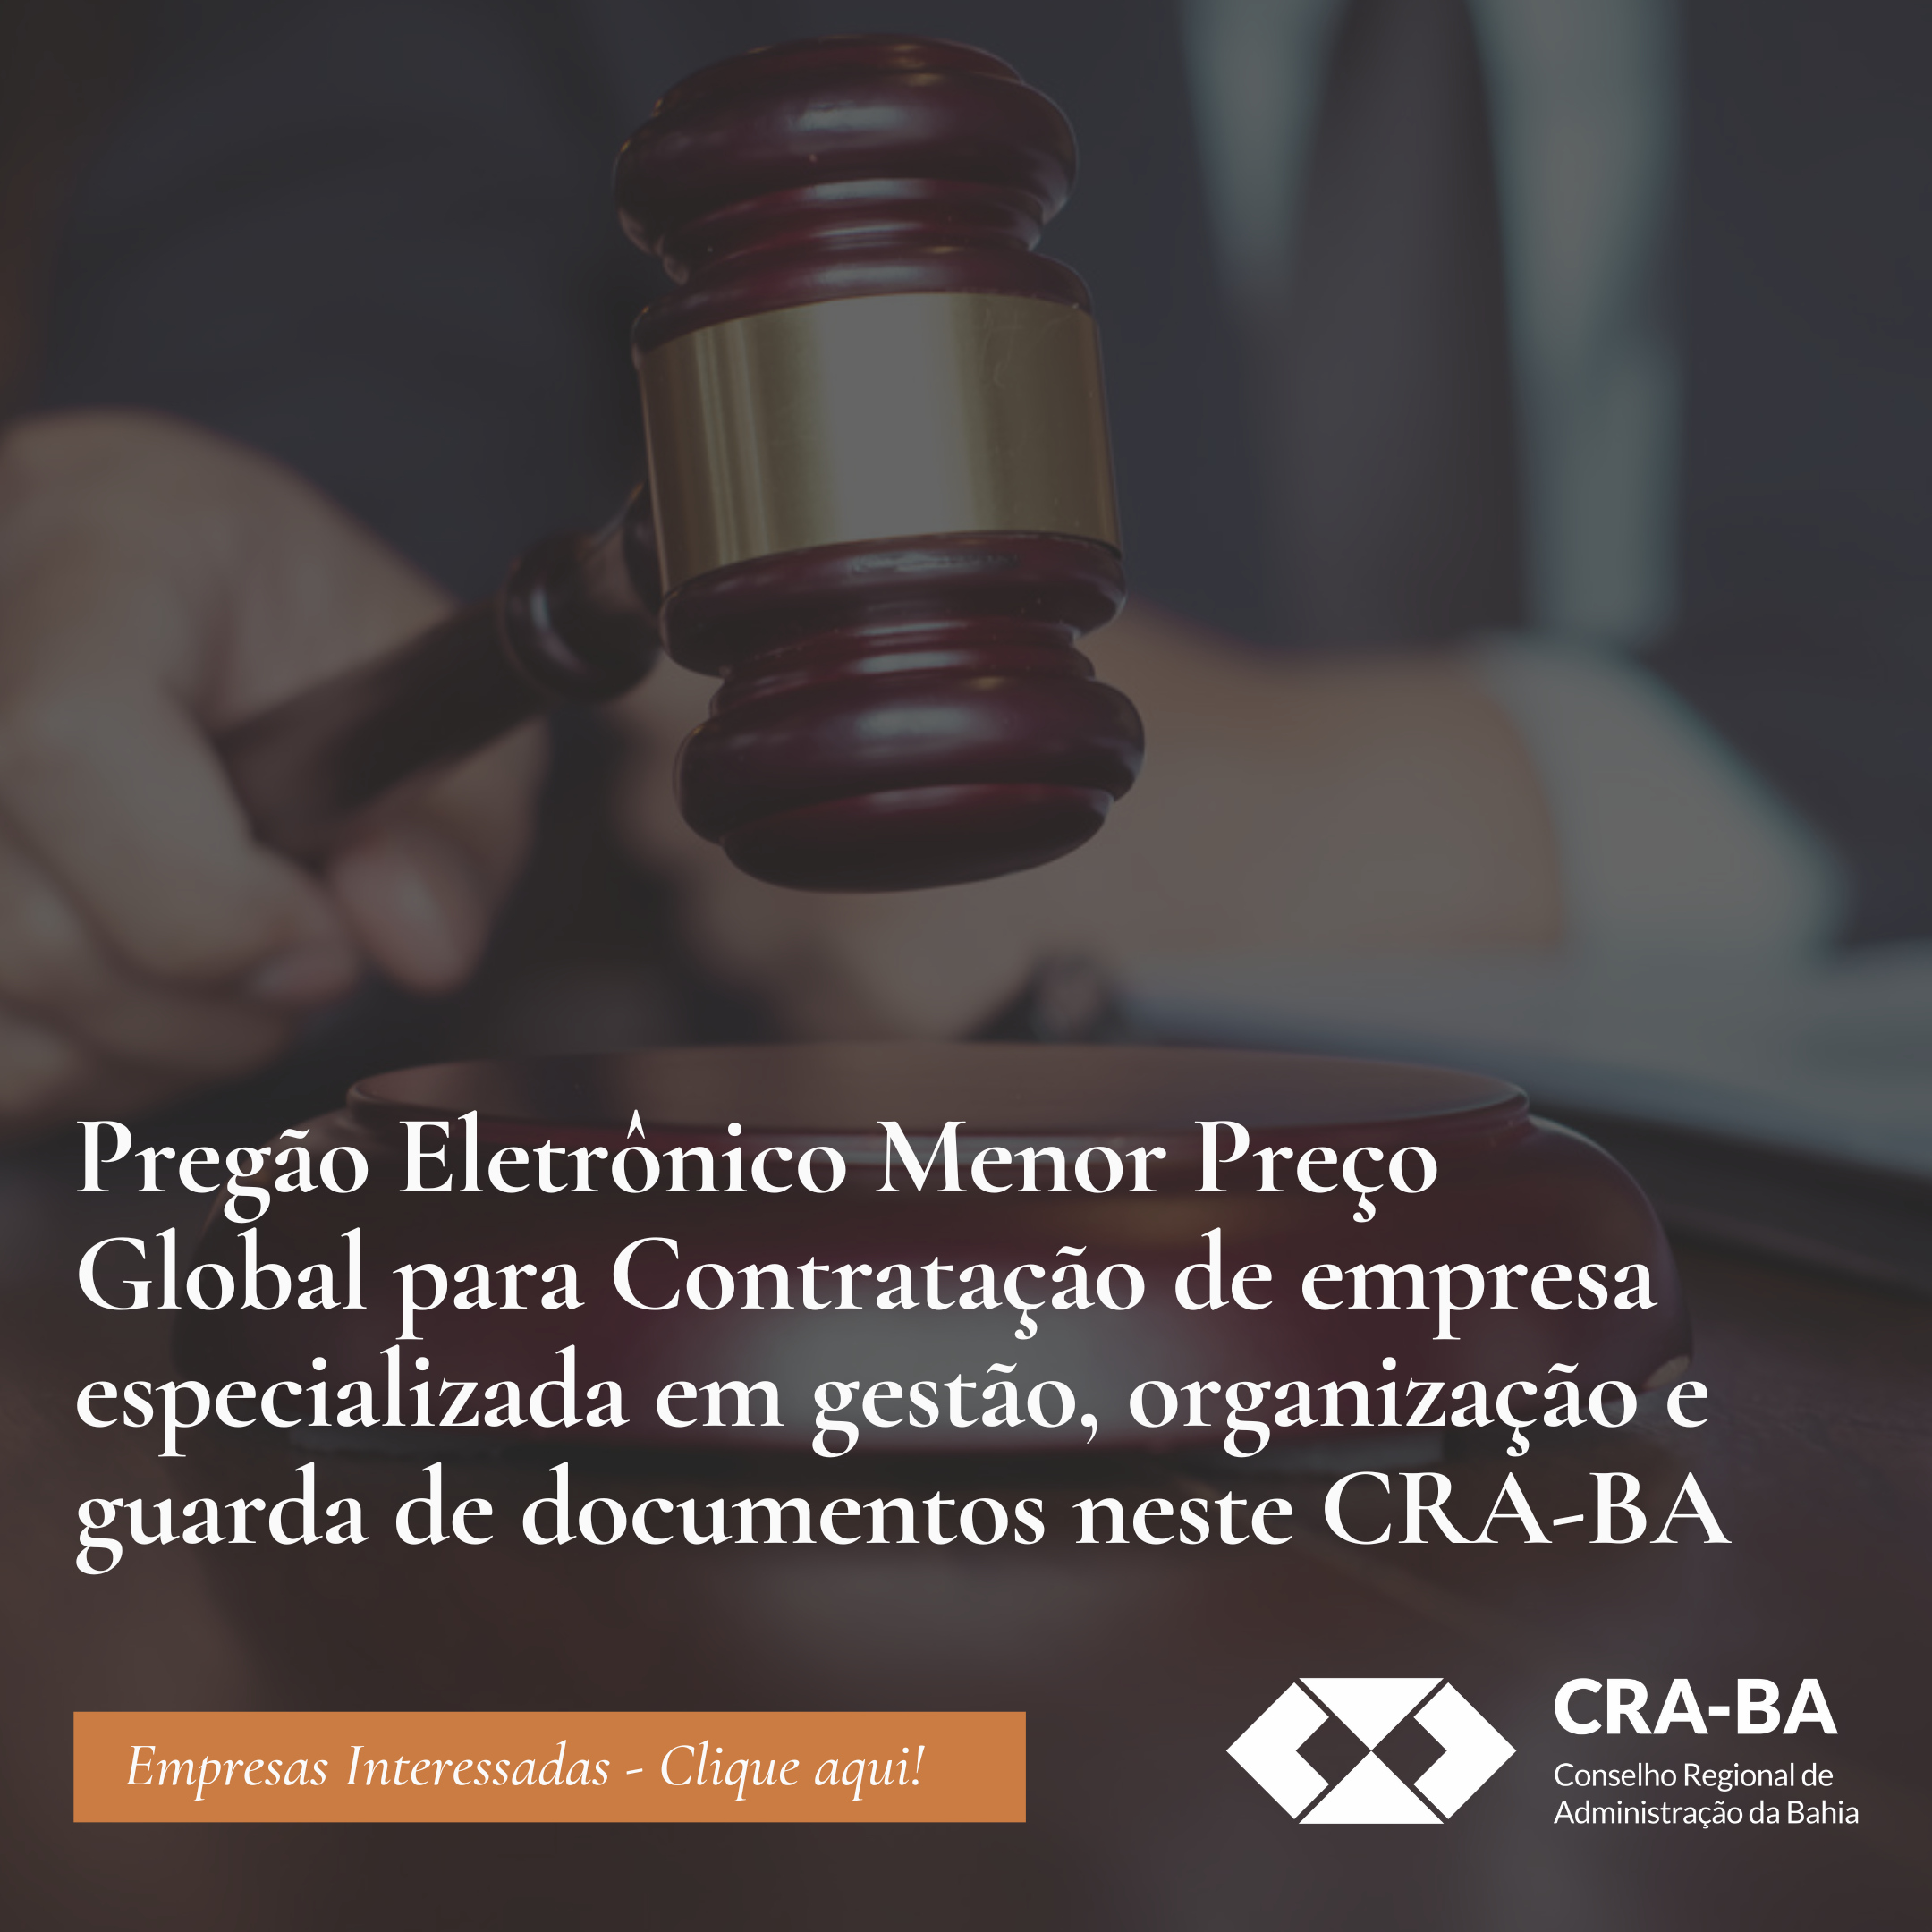 You are currently viewing Pregão Eletrônico Menor Preço Global para Contratação de empresa especializada em gestão, organização e guarda de documentos neste CRA-BA